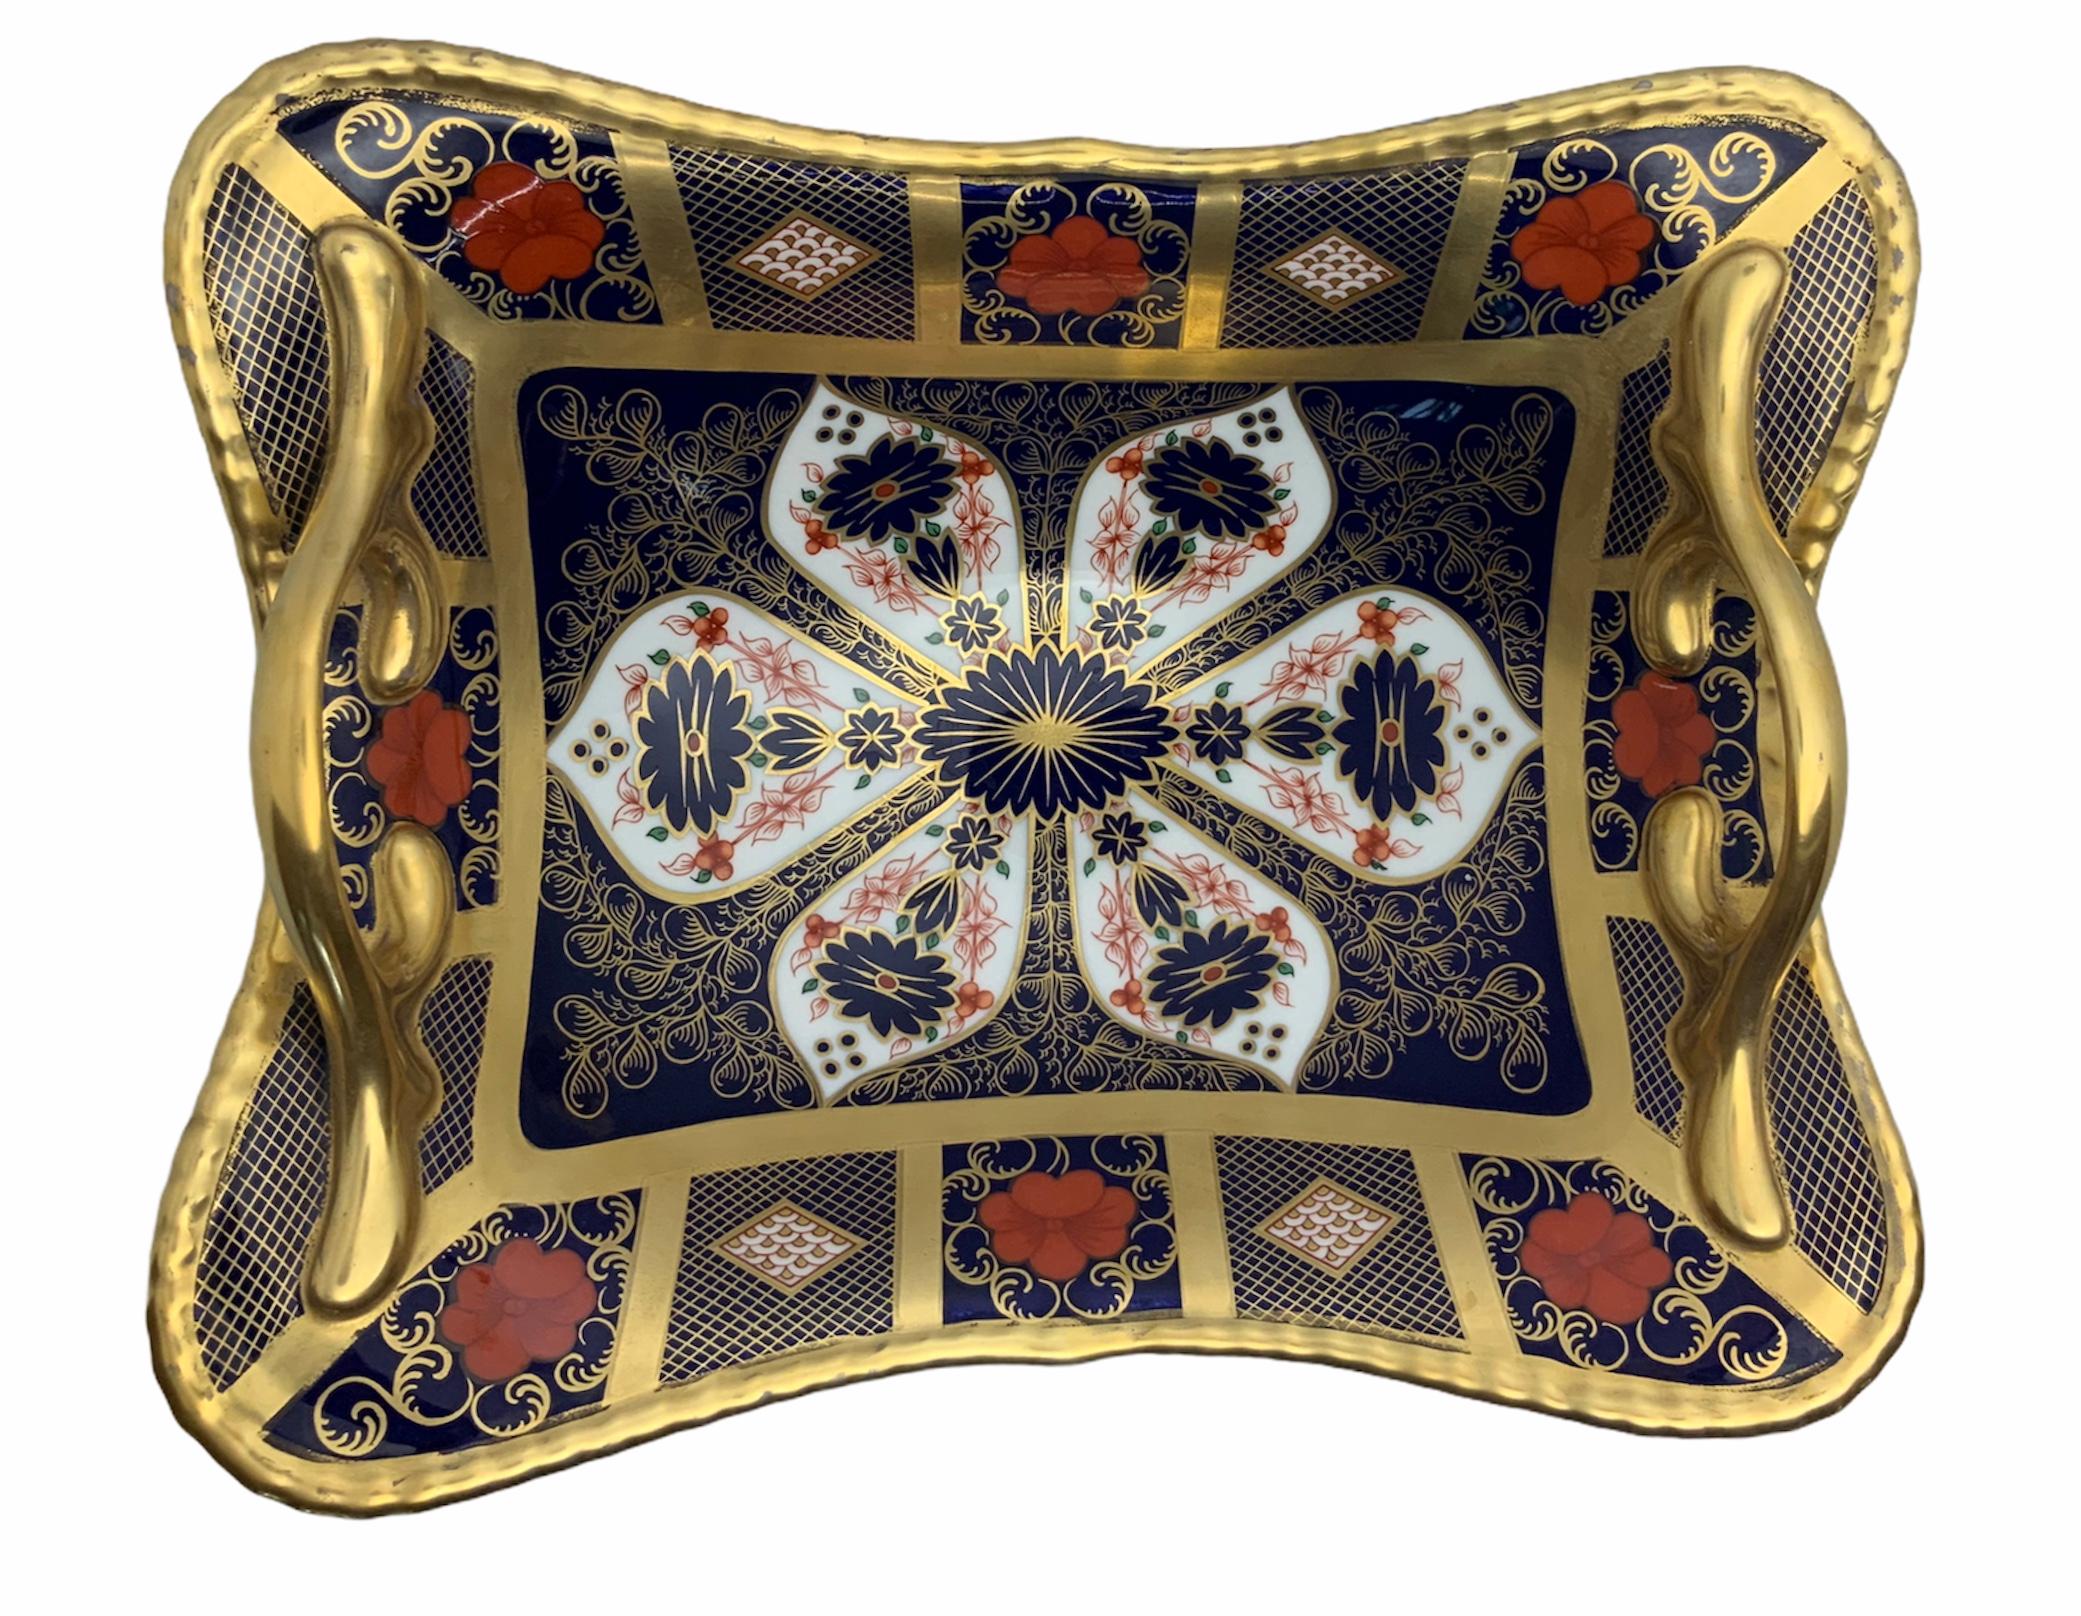 Dies ist ein Royal Crown Derby handbemalter Porzellankorb in Form eines konkaven Parallelogramms, das von einem runden Sockel getragen wird. Sie ist in leuchtendem Rot, Schwarz, Weiß und 22 Karat Gold handbemalt. In der rechteckigen Mitte überwiegt